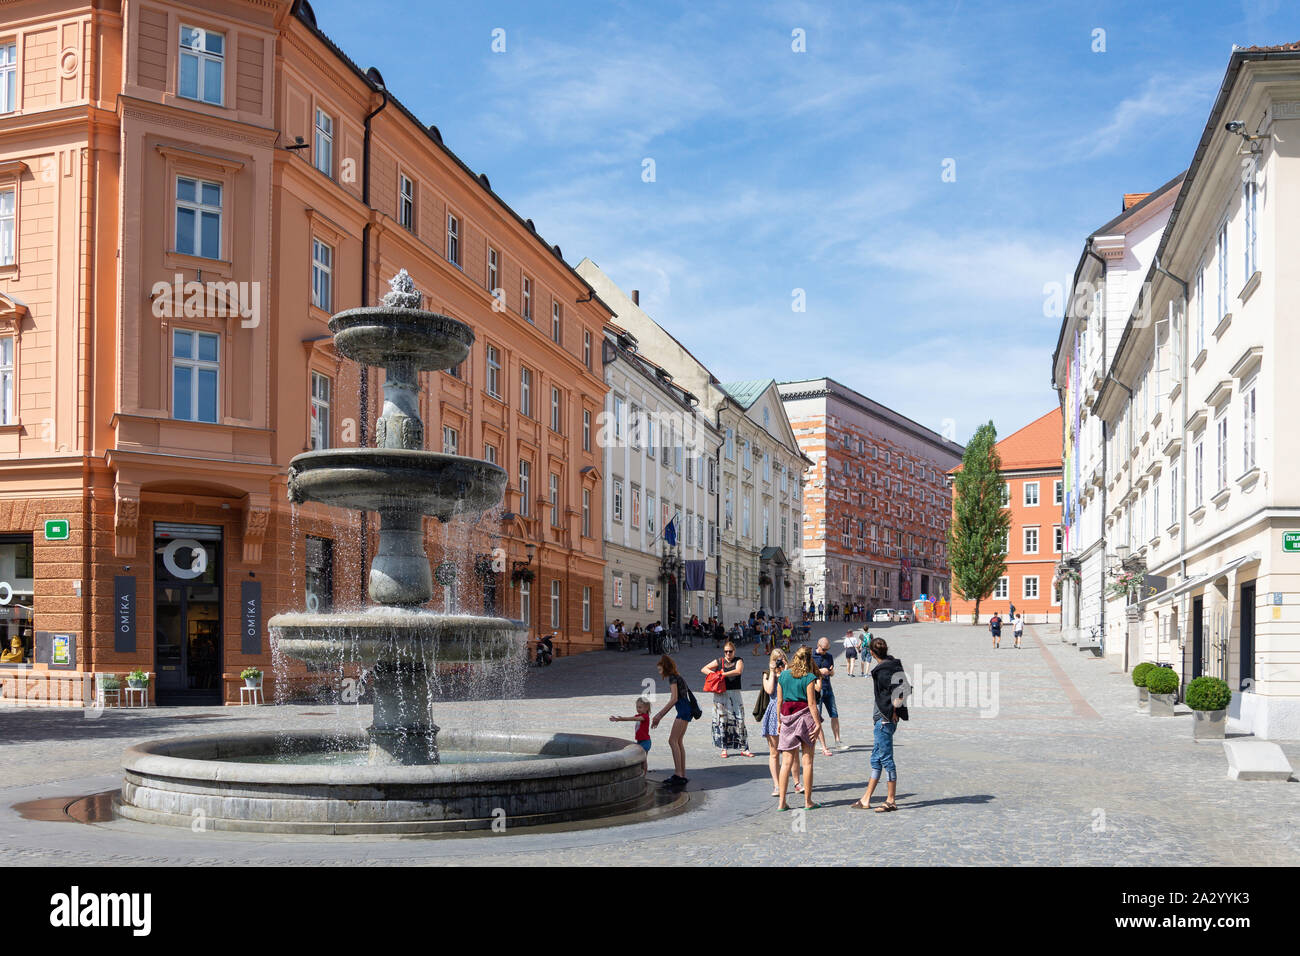 Fountain in New Square (Novi Trg), Old Town, Ljubljana, Slovenia Stock Photo